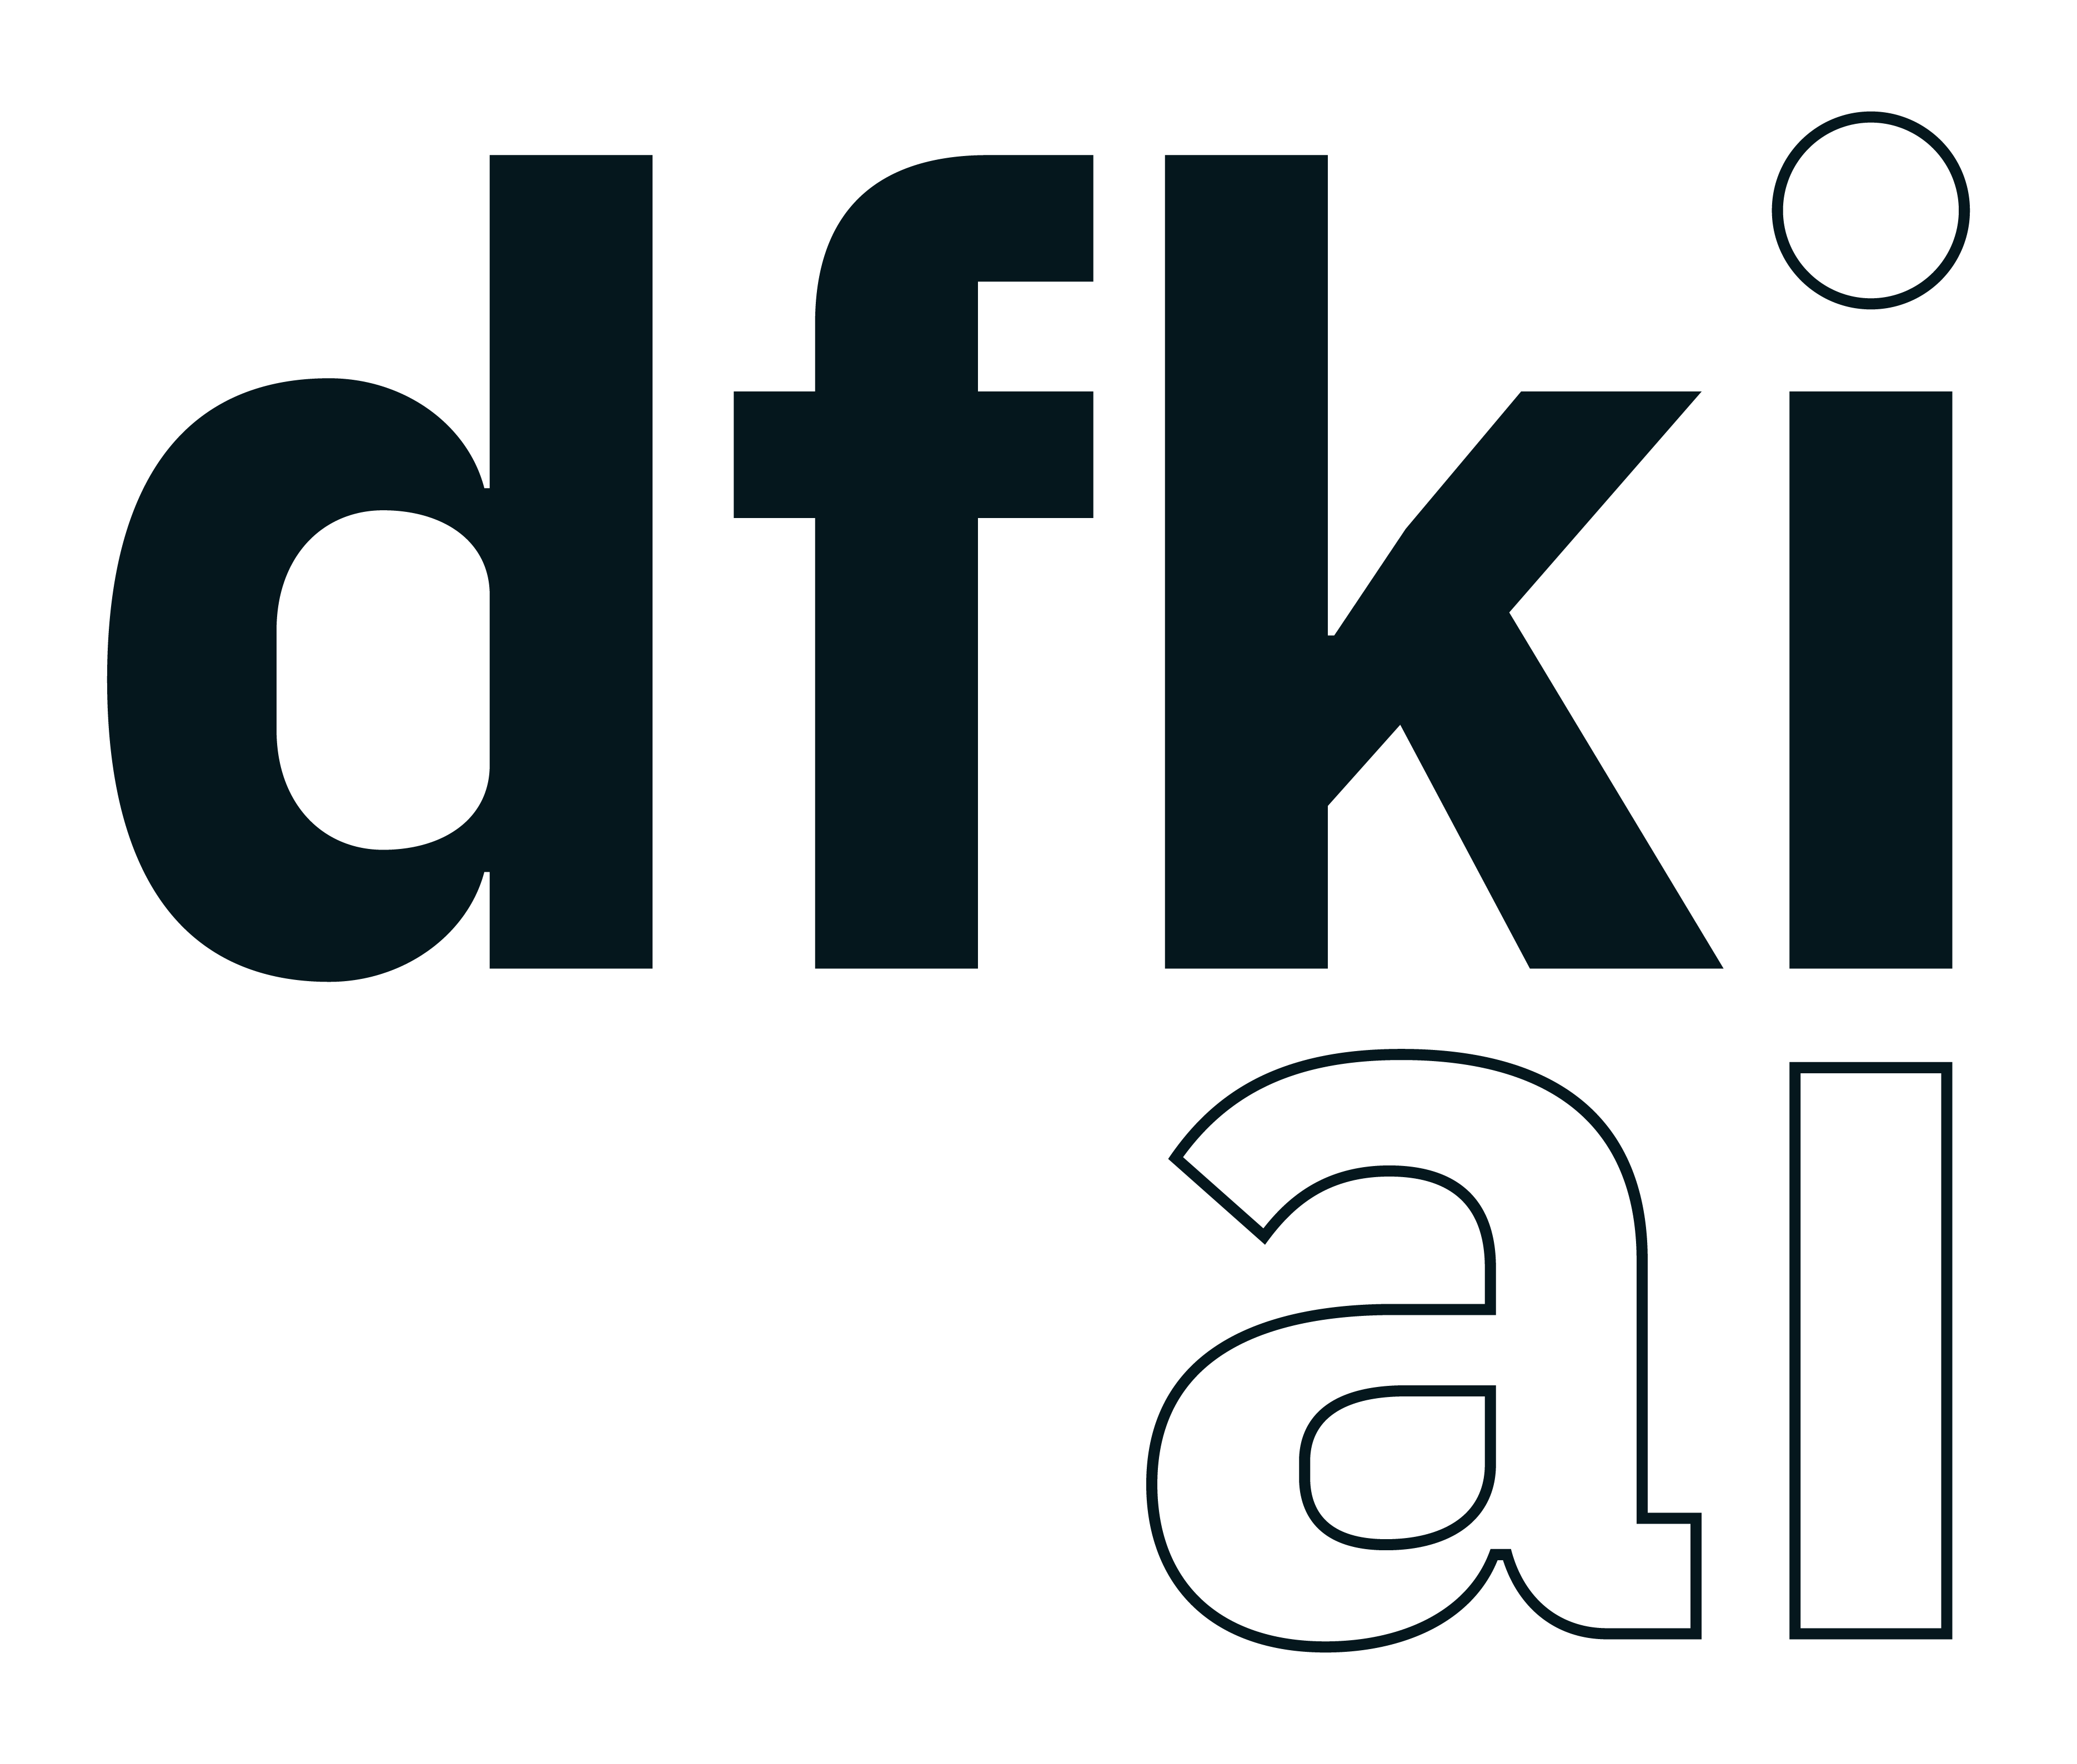 Deutsches Forschungszentrum für Künstliche Intelligenz GmbH (DFKI)